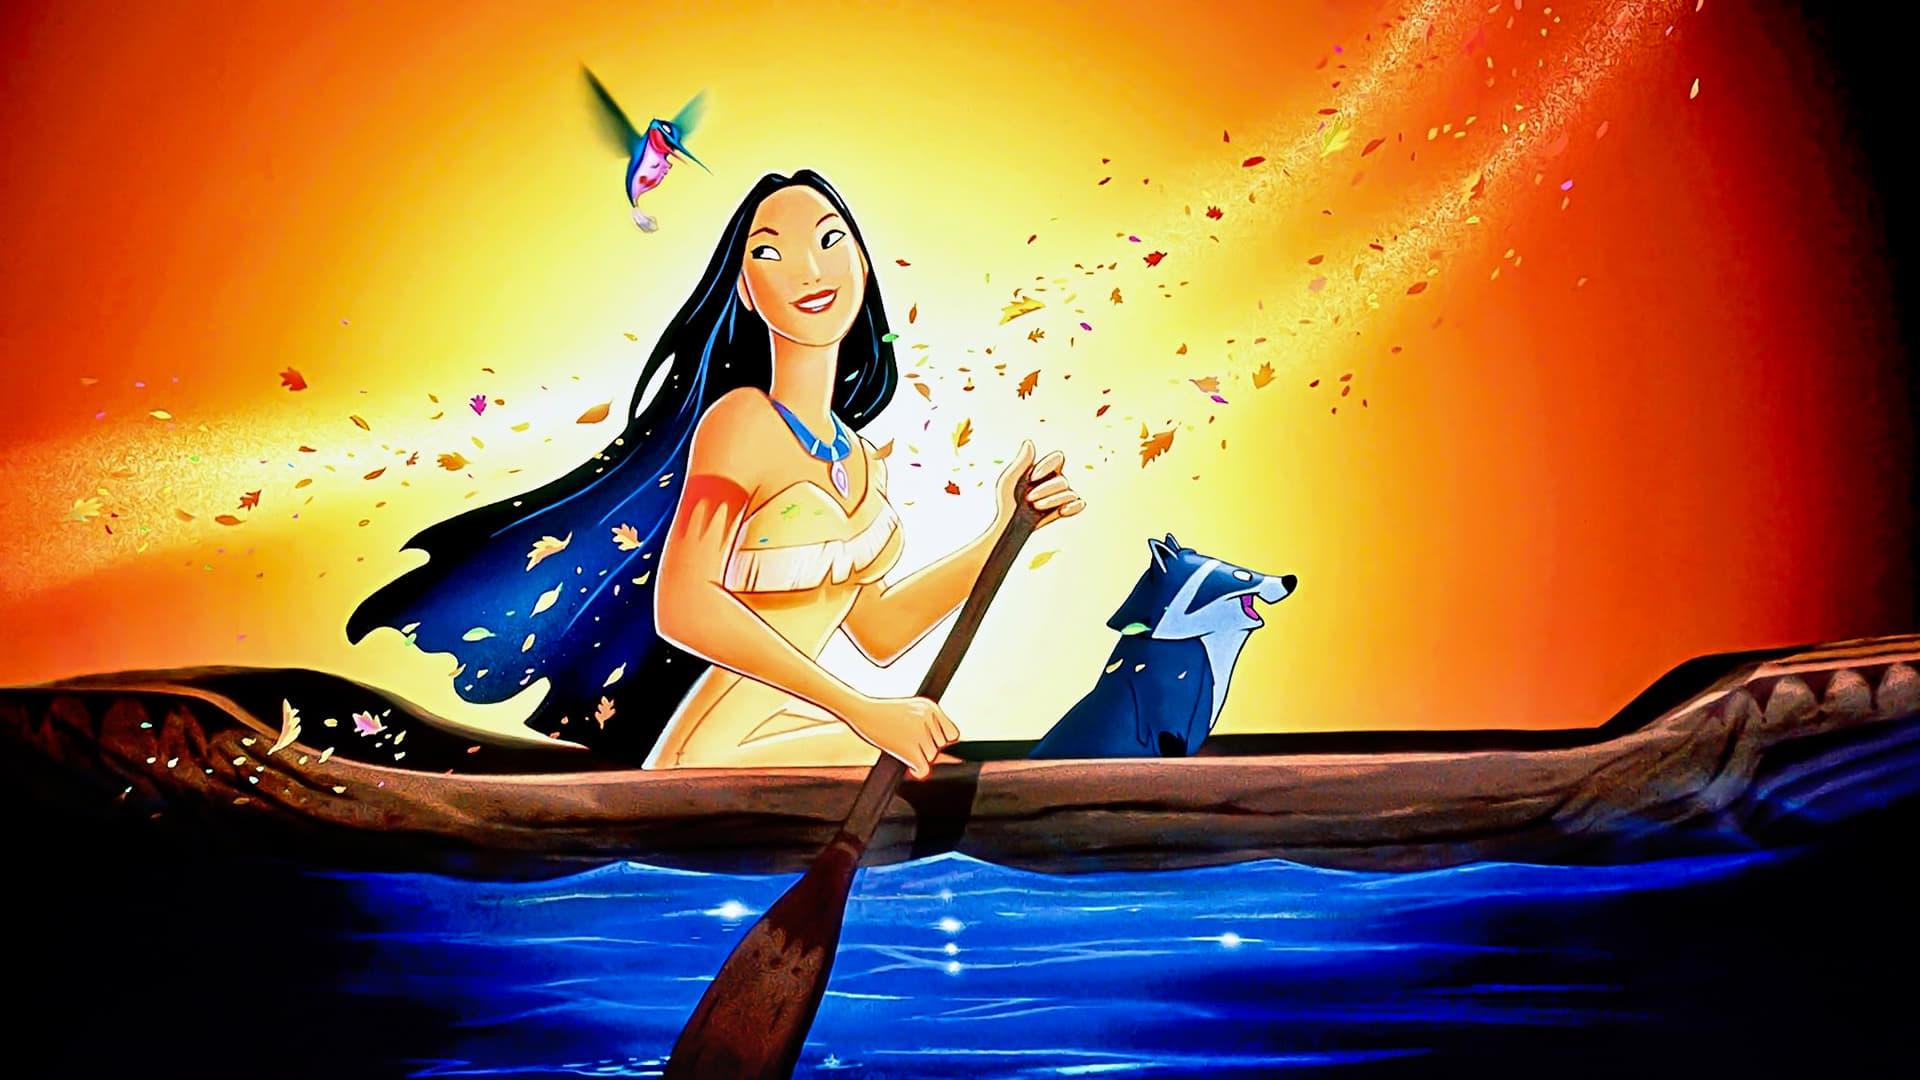 Image du film Pocahontas, une légende indienne yjzequlz9knptuvdkv73jbcqnbrjpg